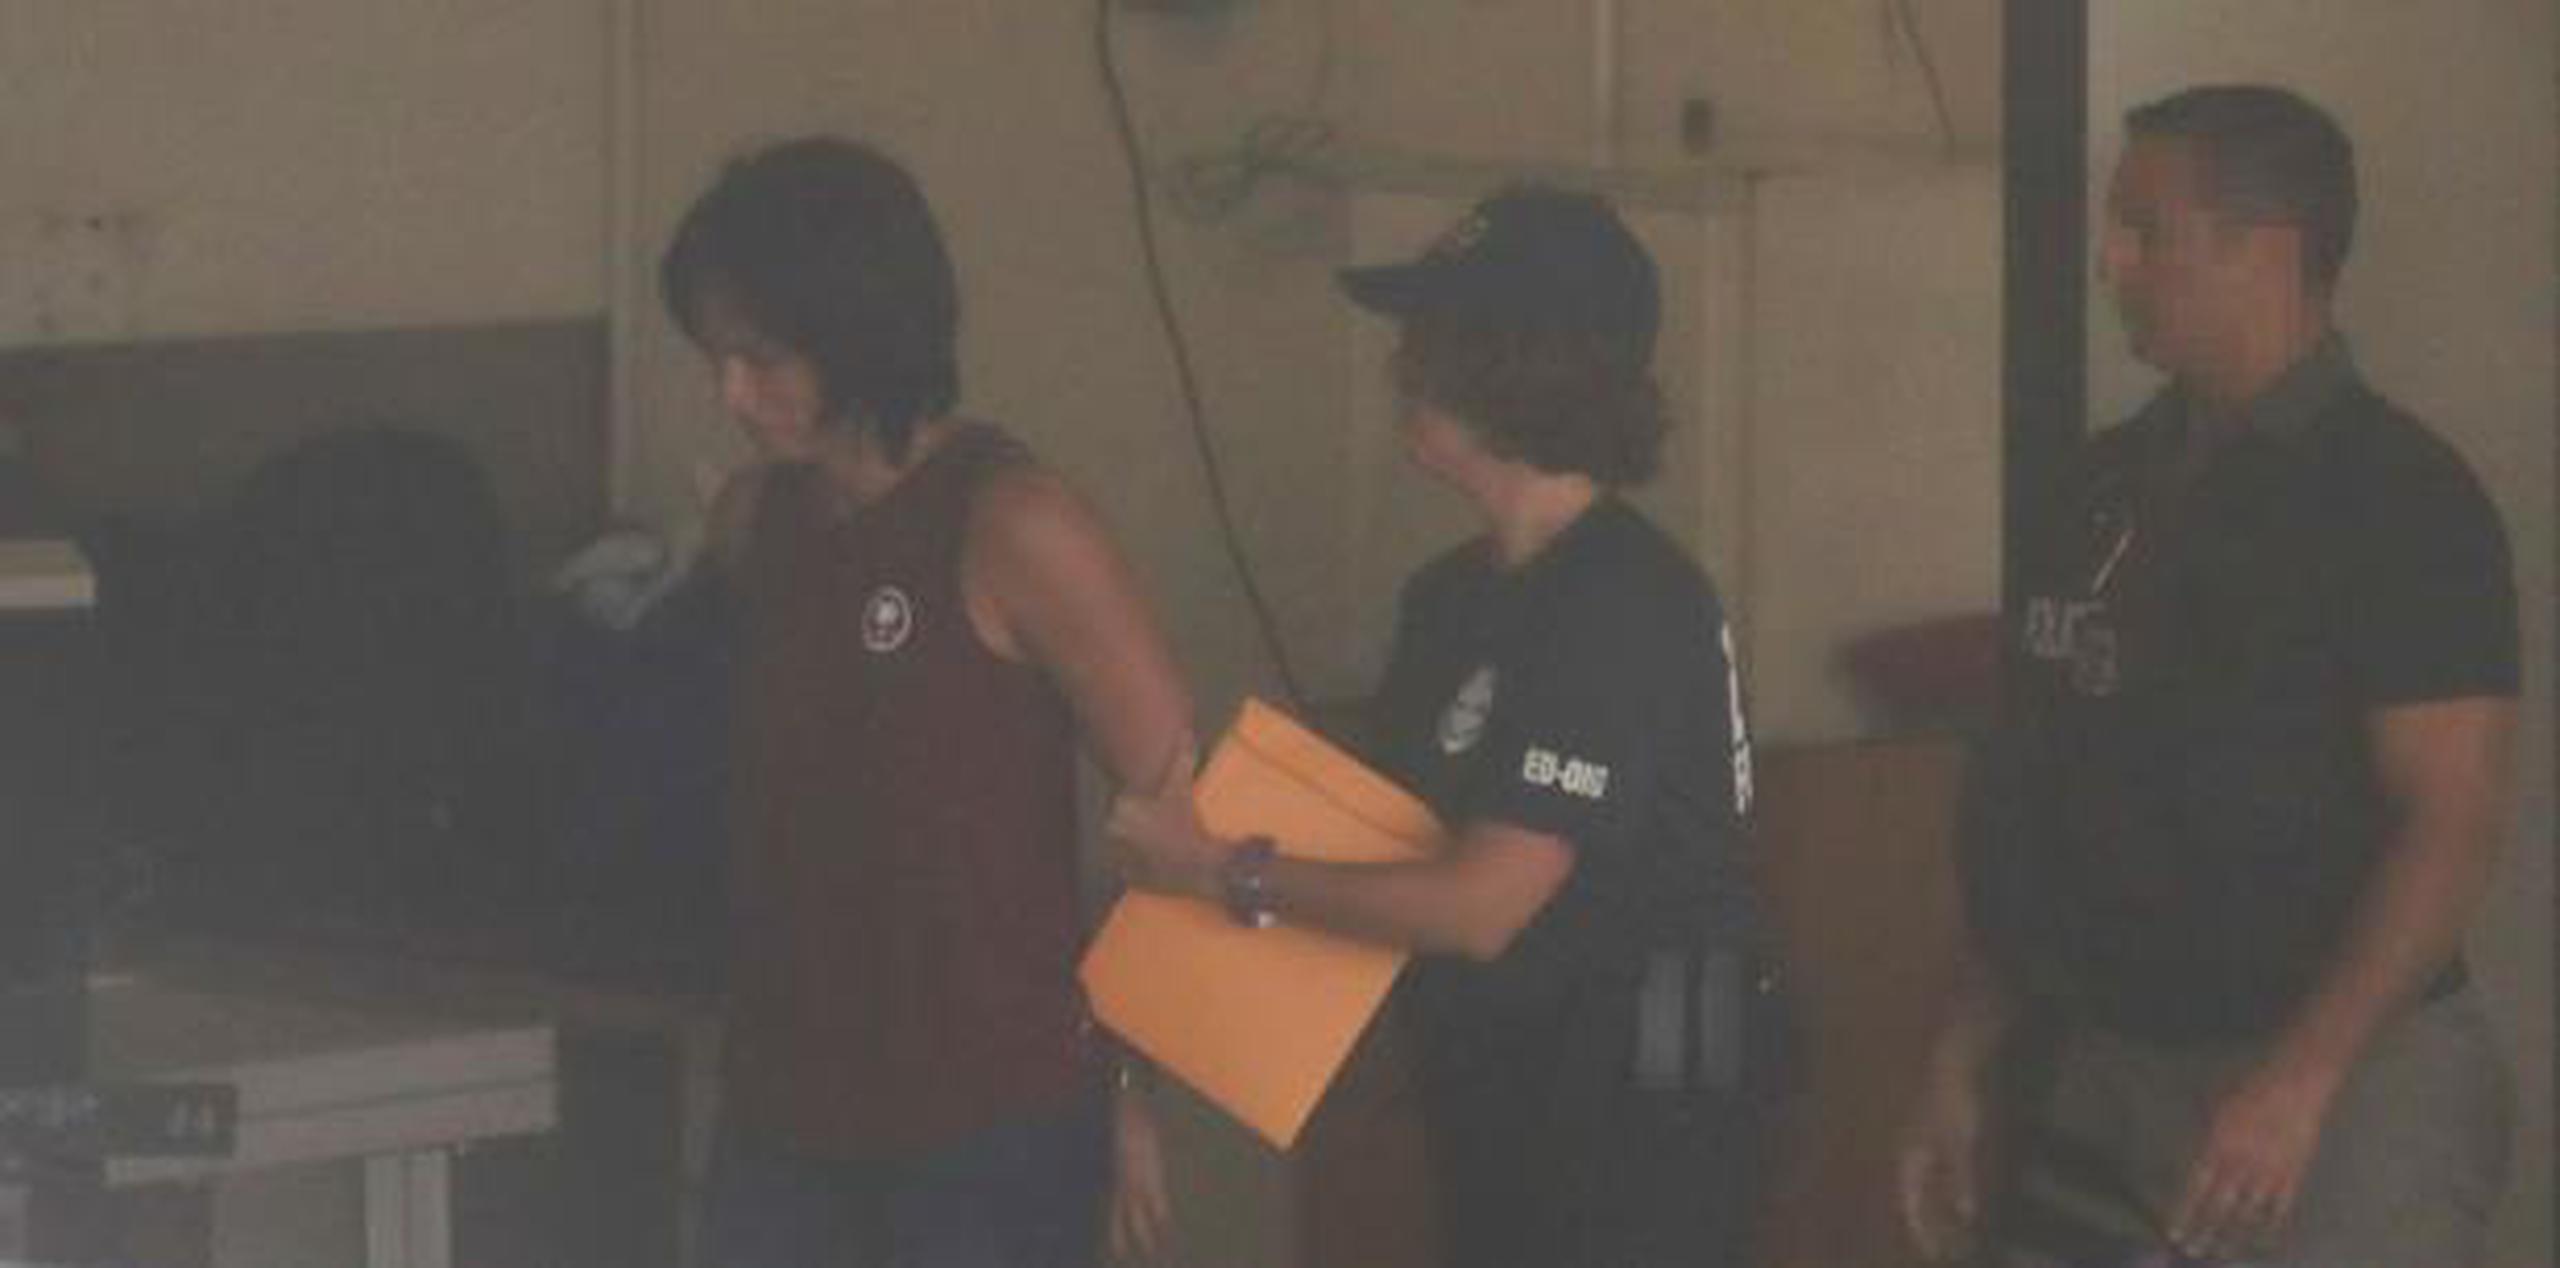 Entre los arrestos se encuentra una exayudante de la exsecretaria de Educación Julia Keleher. (teresa.canino@gfrmedia.com)